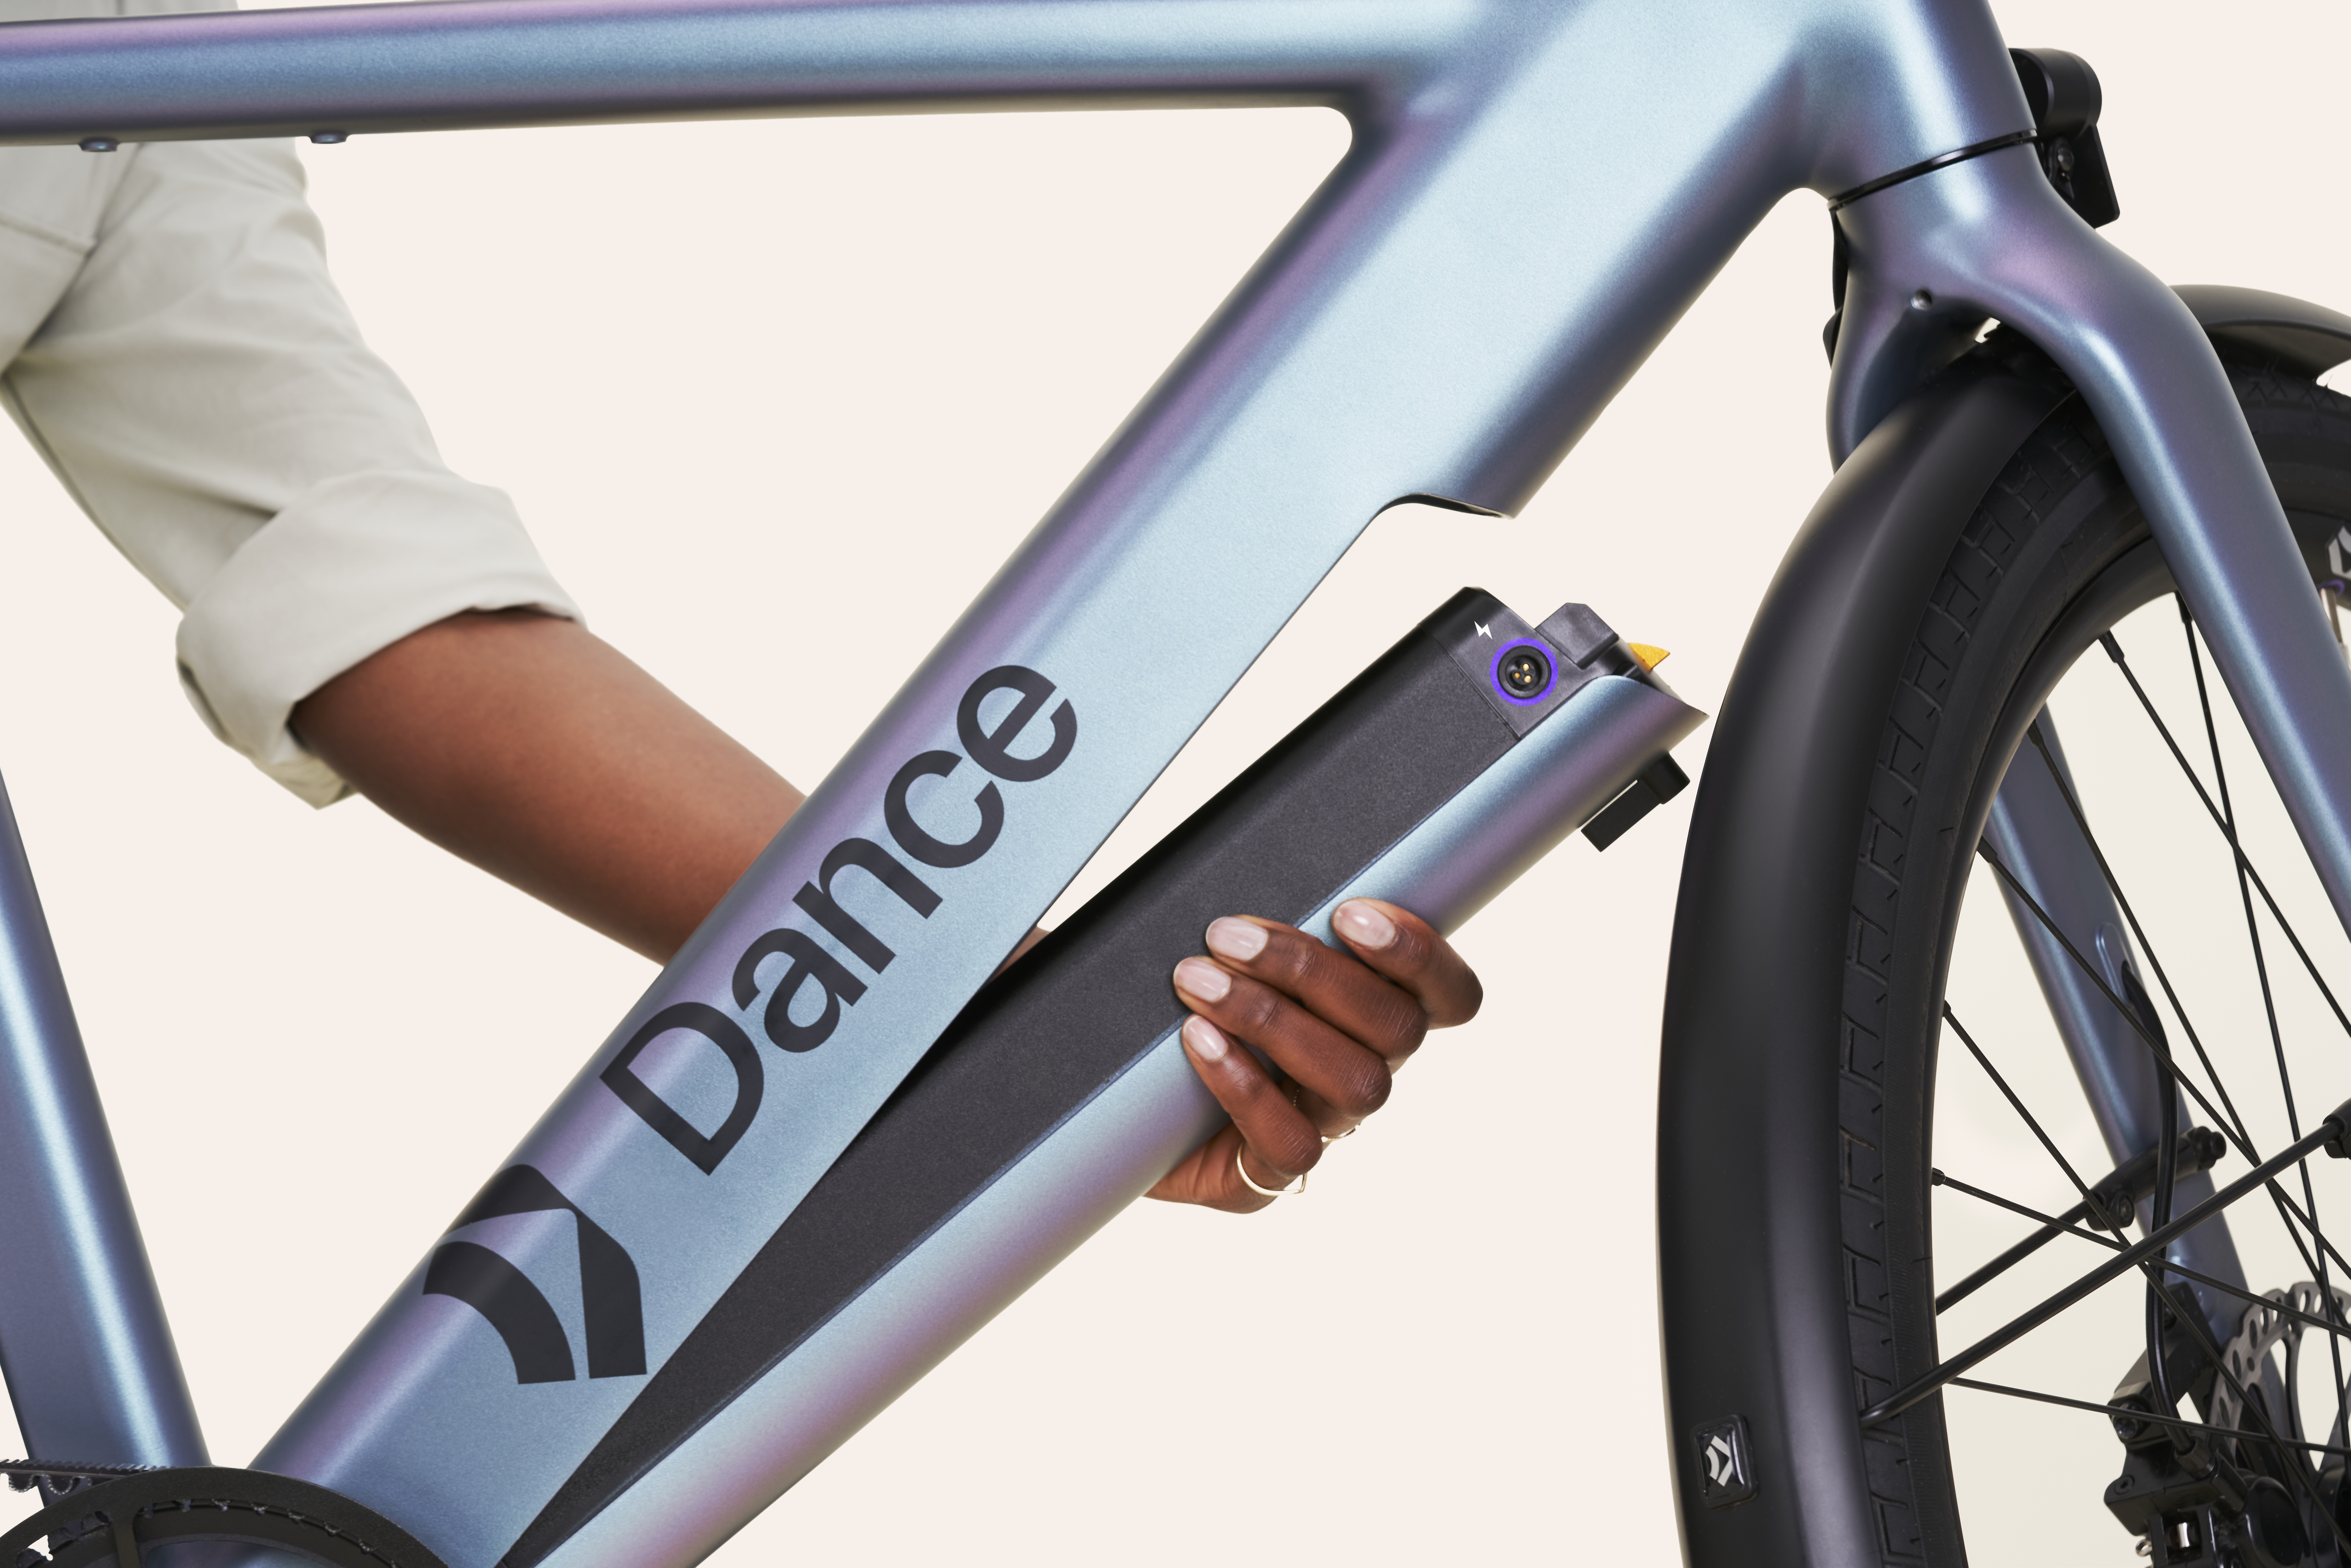 Dance raises another $19.4 million for its e-bike subscription service